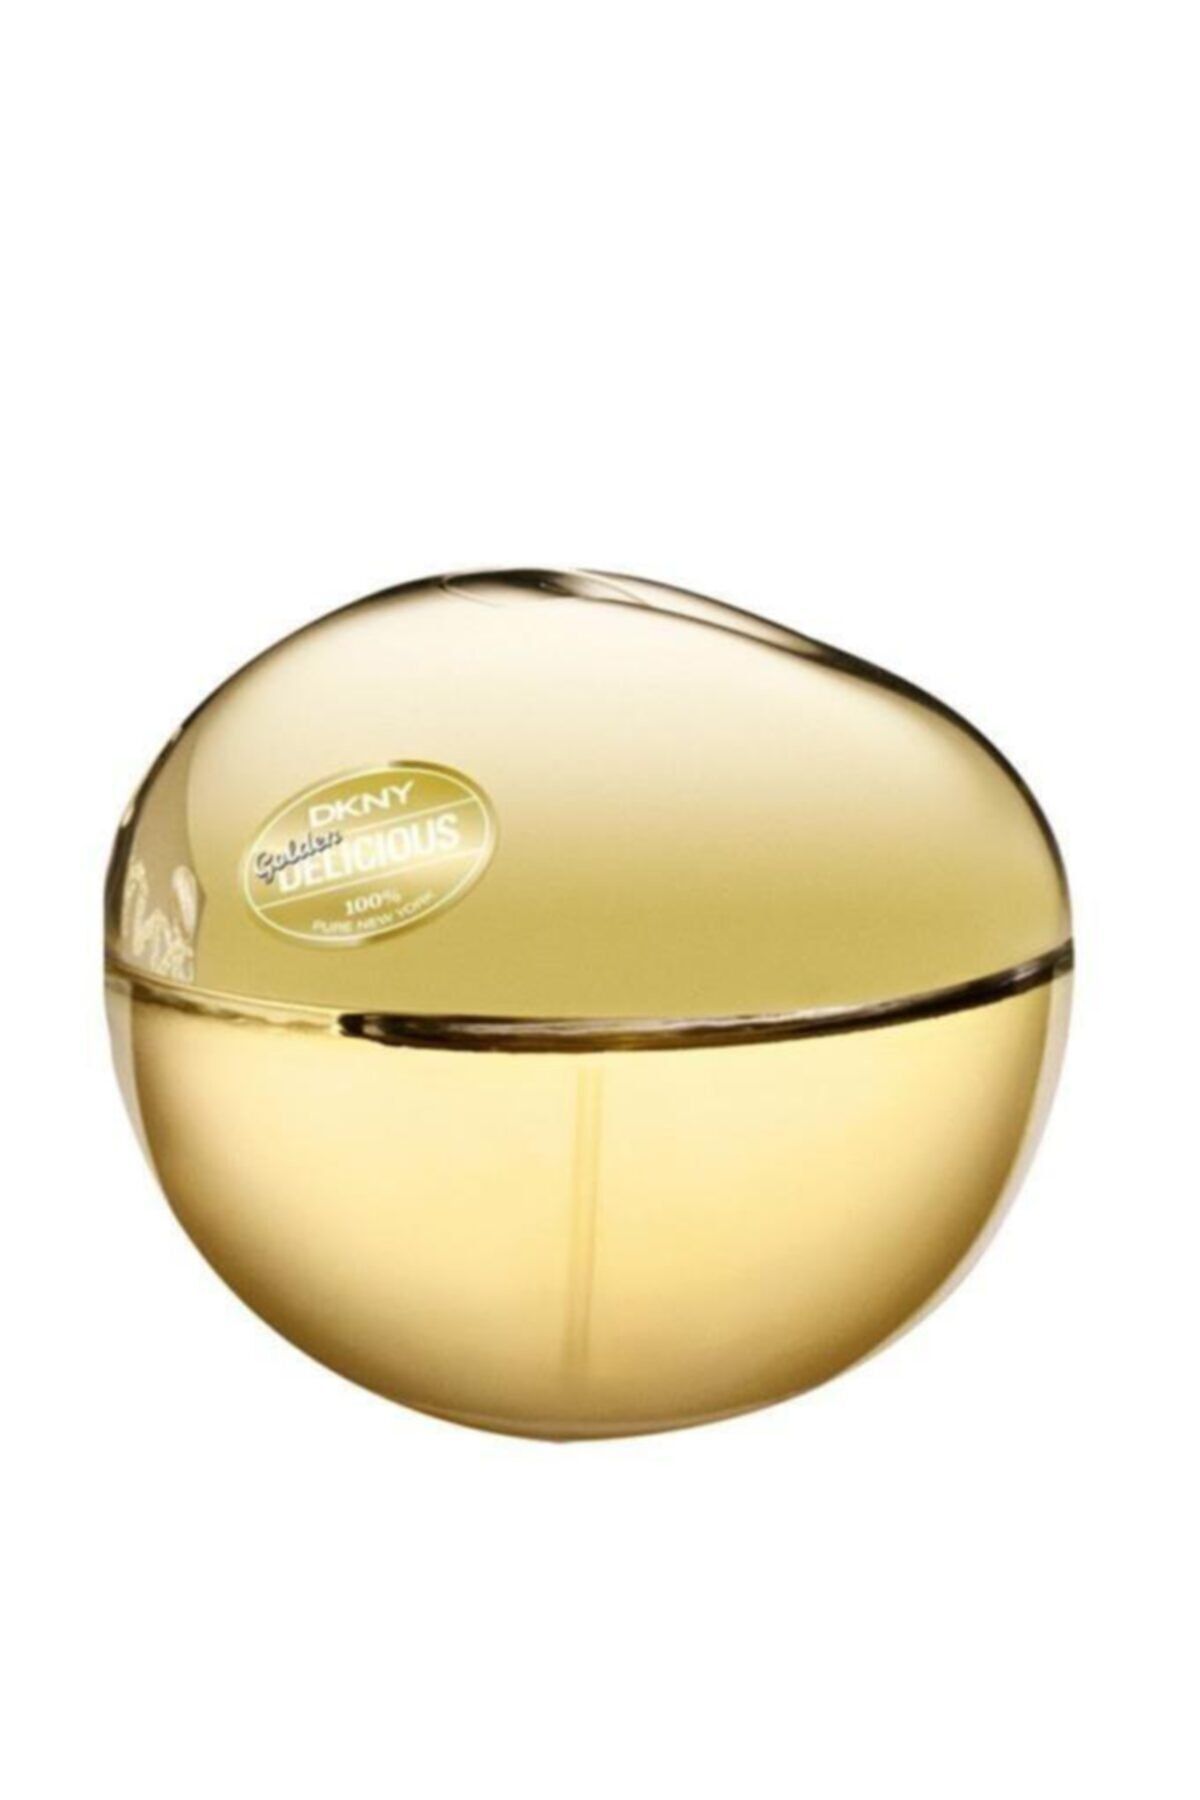 Dkny Donna Karan New York Golden Delıcıous 100 Ml Edp Kadın Parf